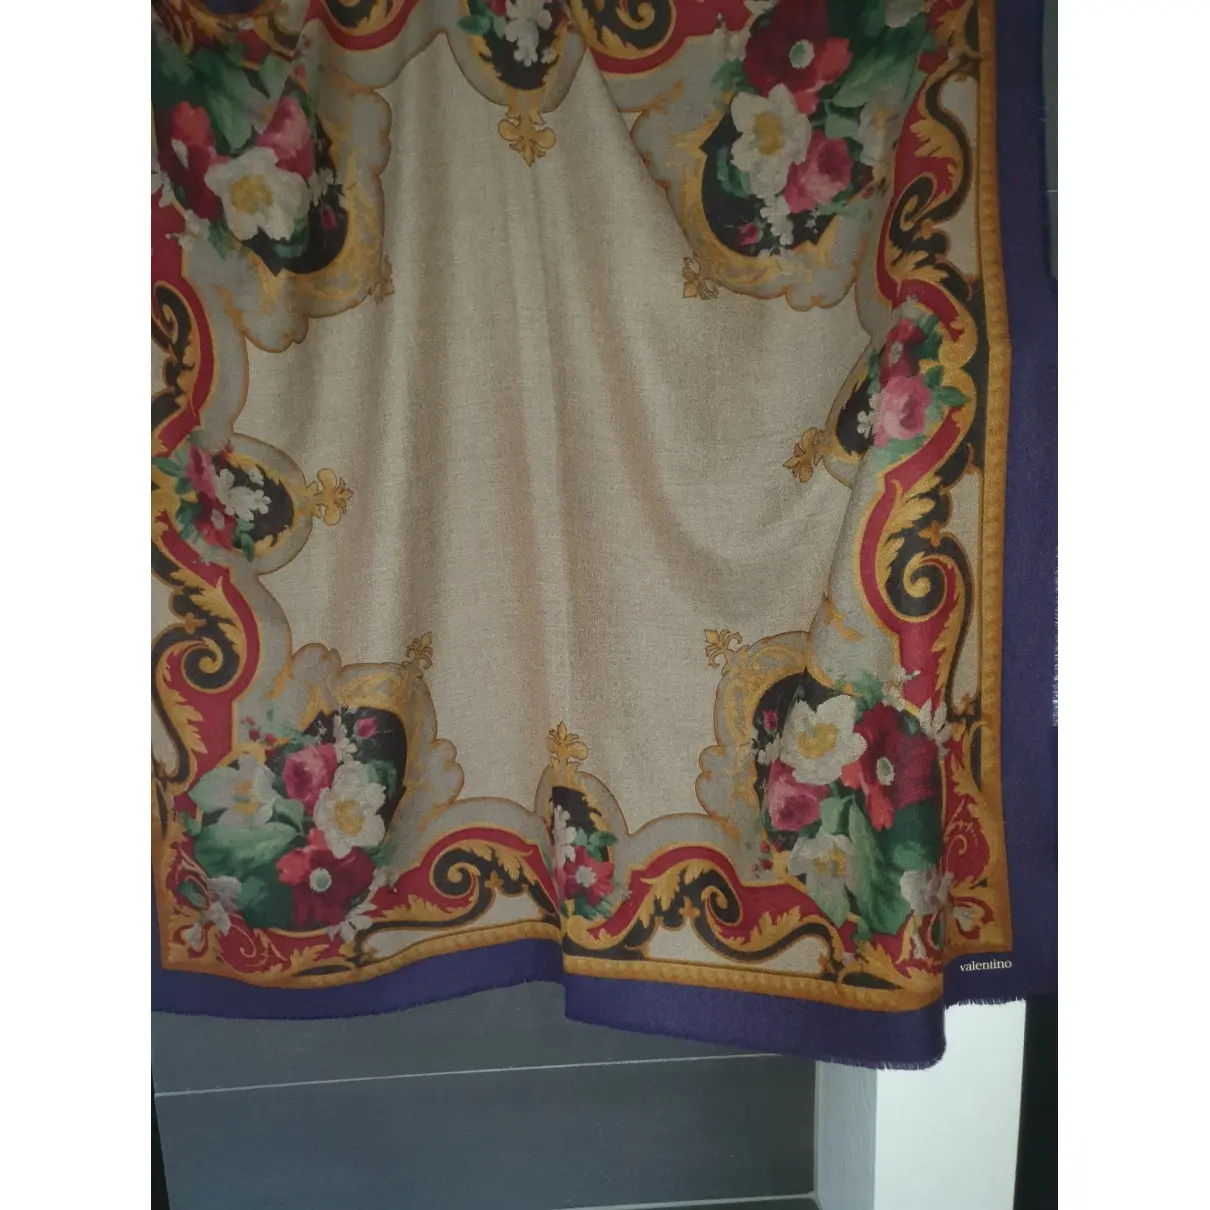 Valentino Garavani Wool silk handkerchief for sale